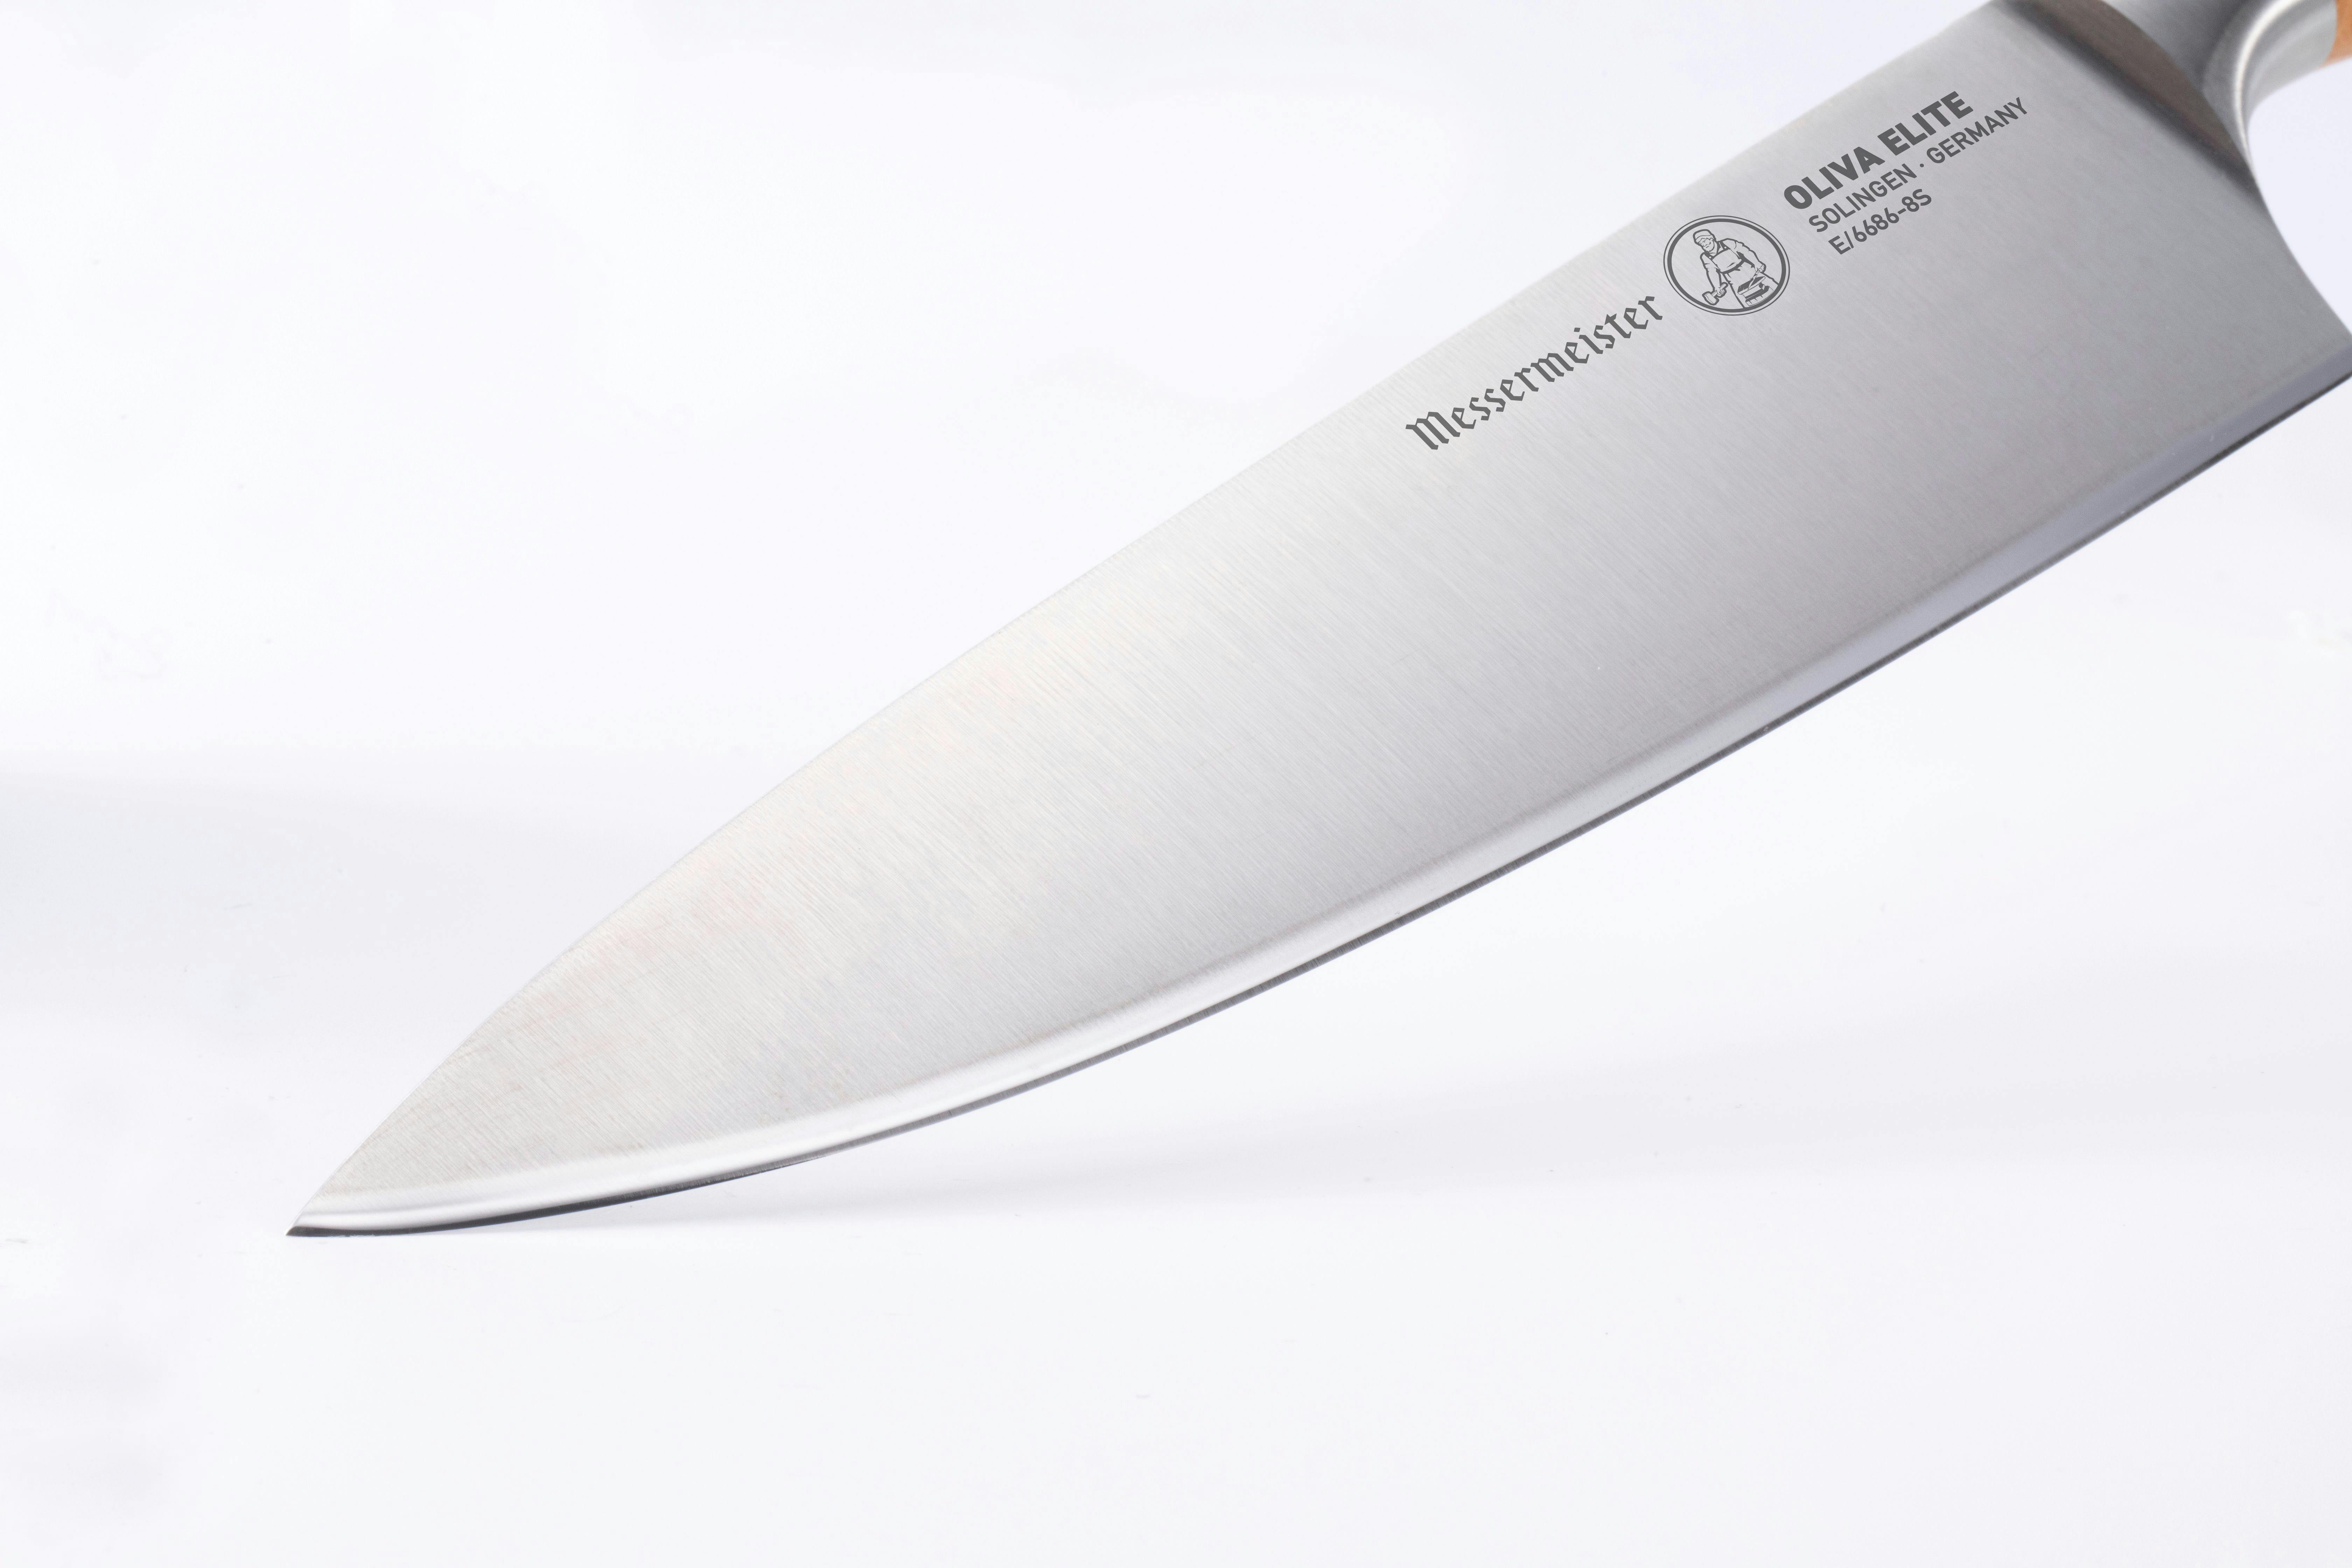 Messermeister Oliva Elite Stealth Chefs Knife